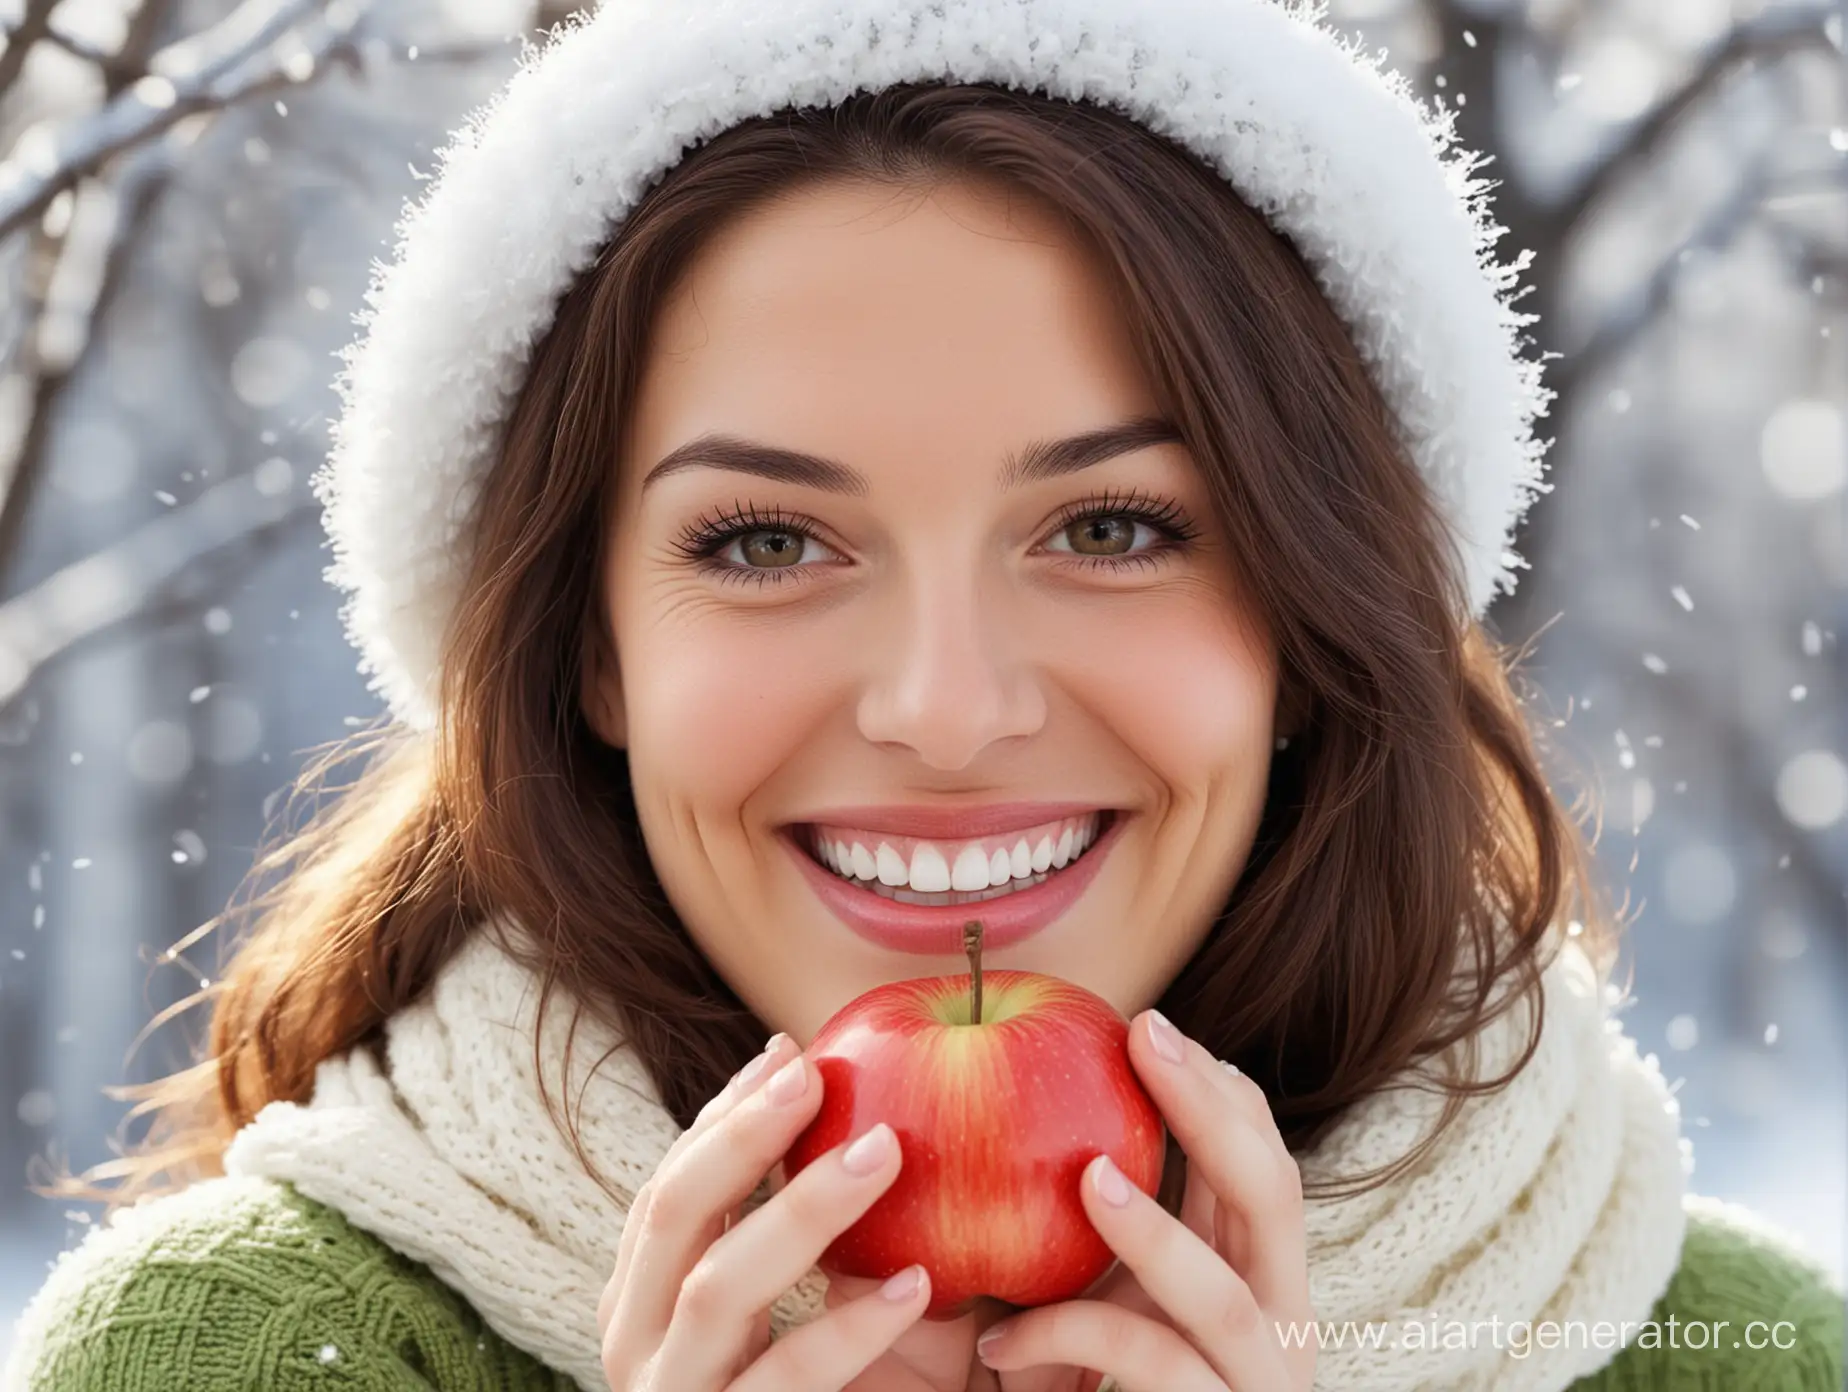 Smiling-Woman-Holding-Apple-Closeup-SnowWhite-Smile-Portrait